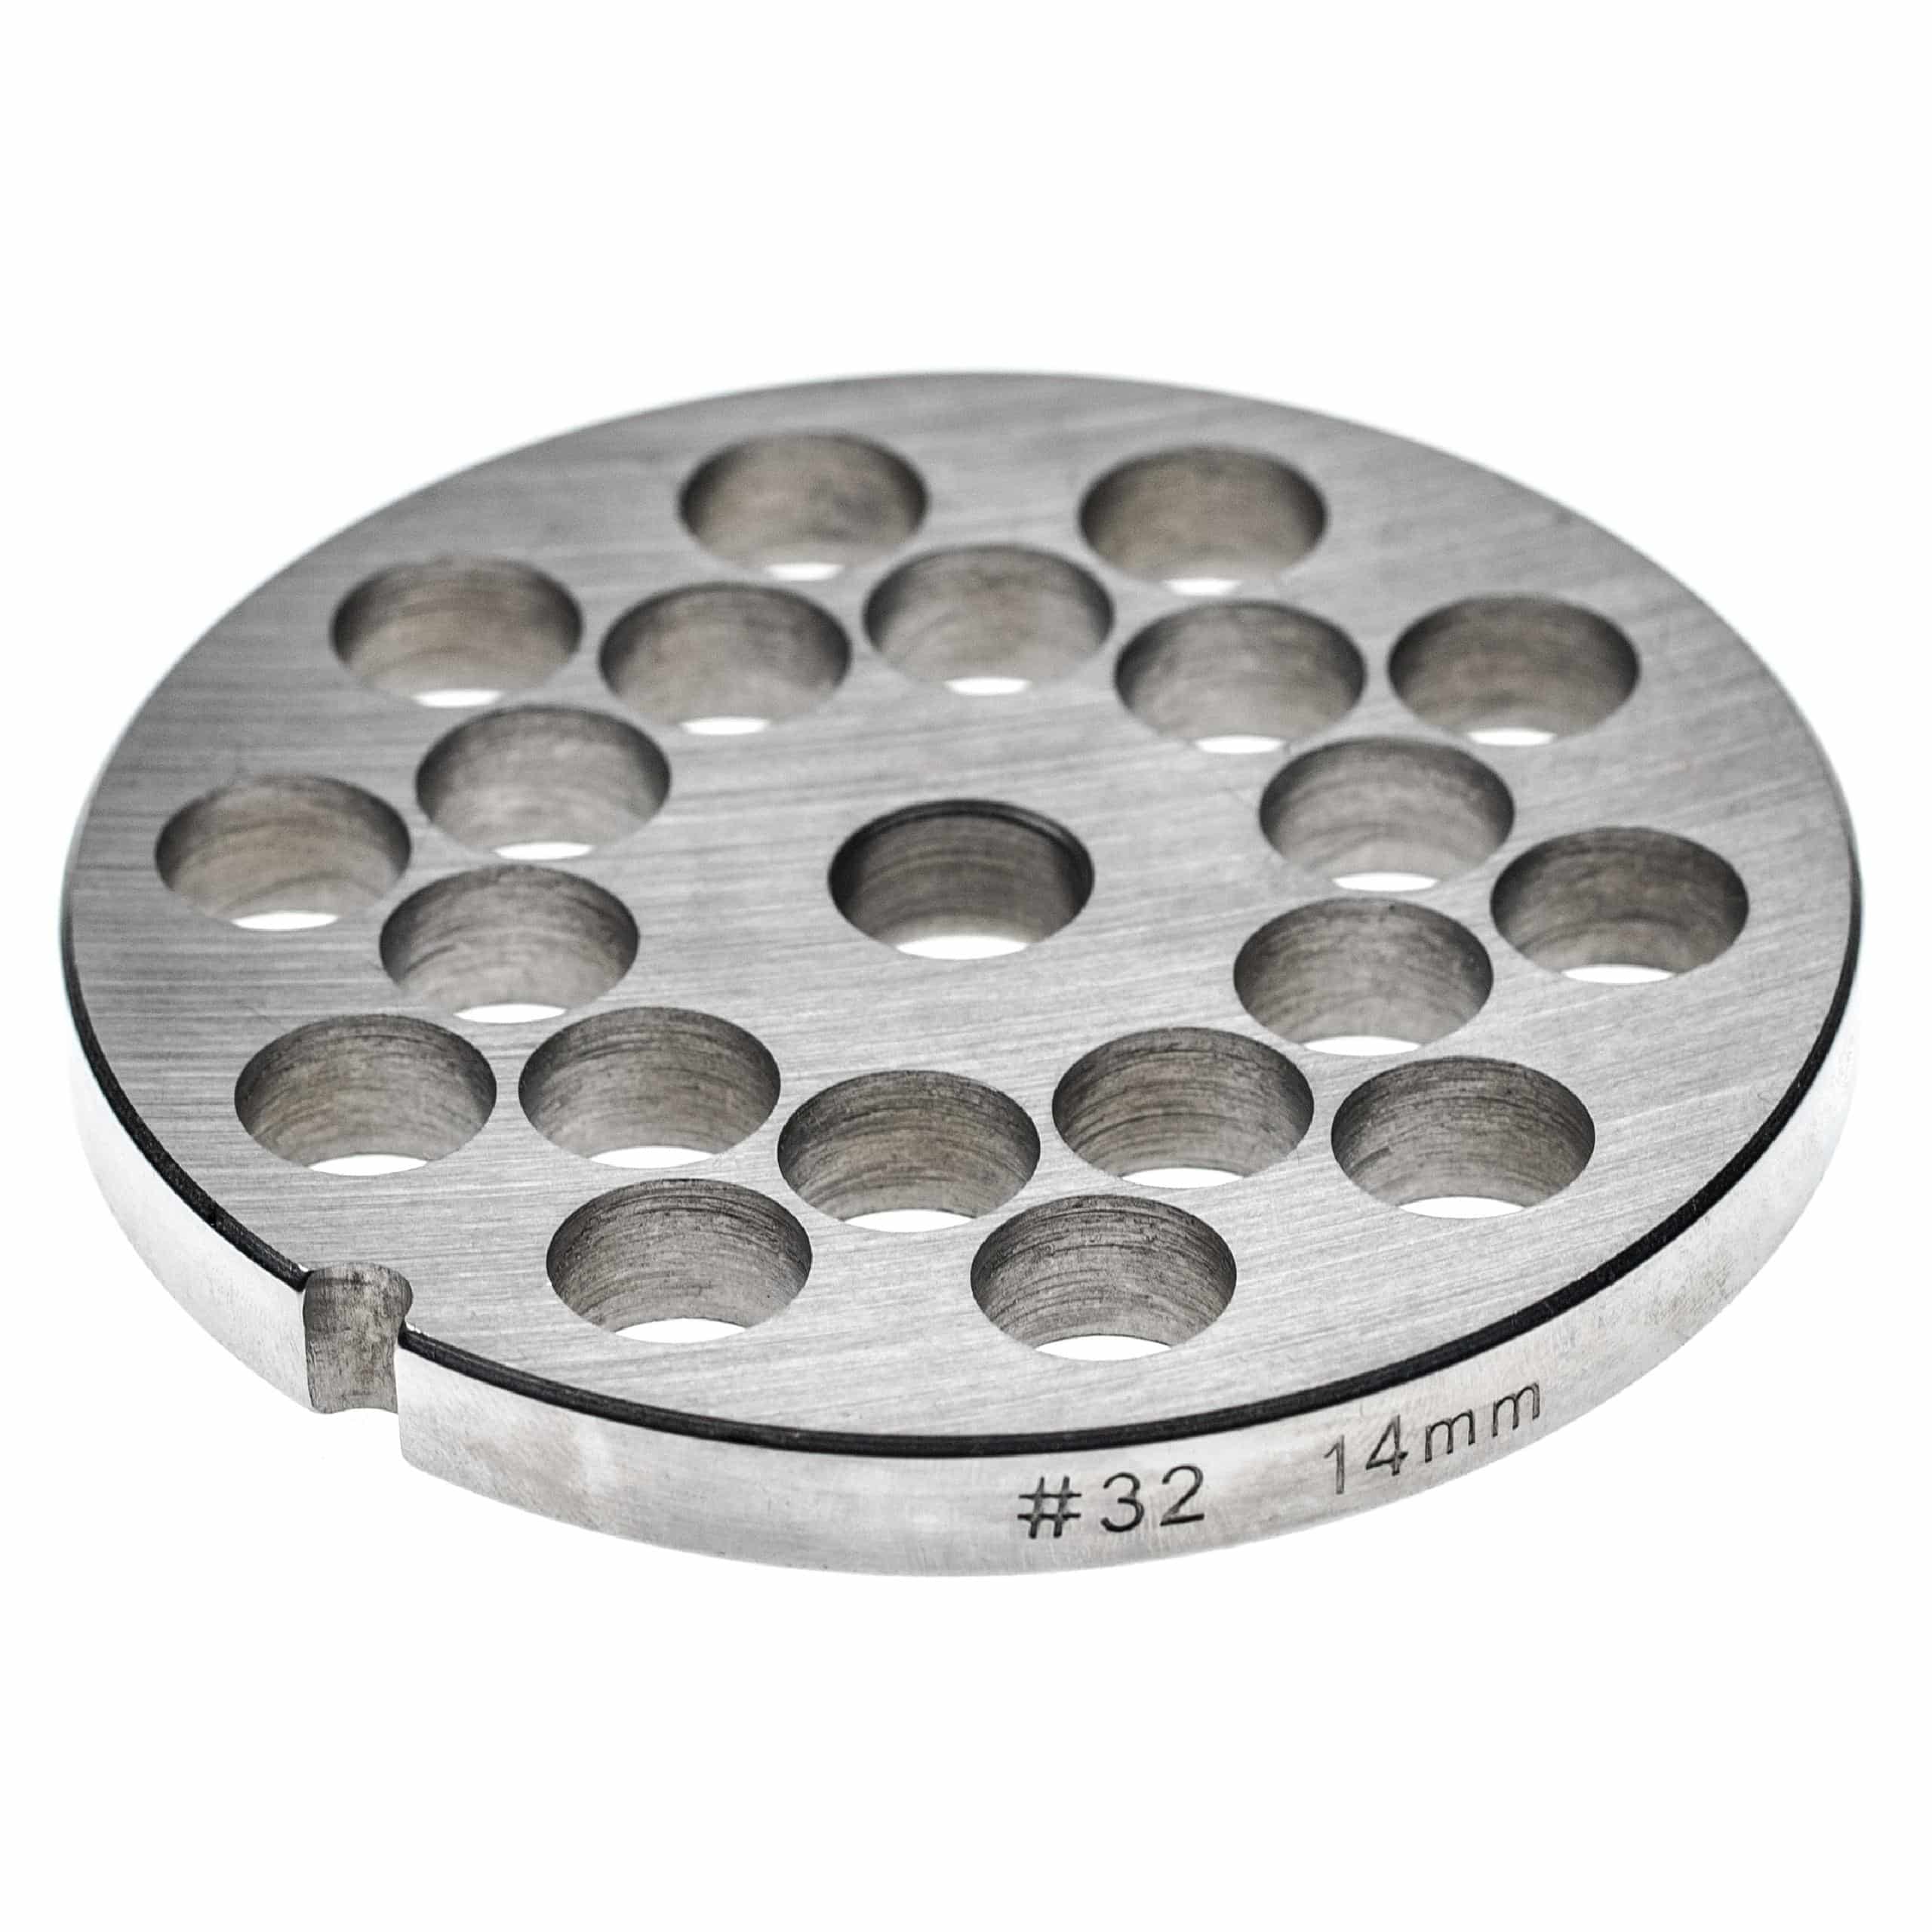 Disque perforé t. 32 pour hachoir ADE, Caso, Fama, KBS, Porkert - trous 14 mm ⌀, acier inoxydable